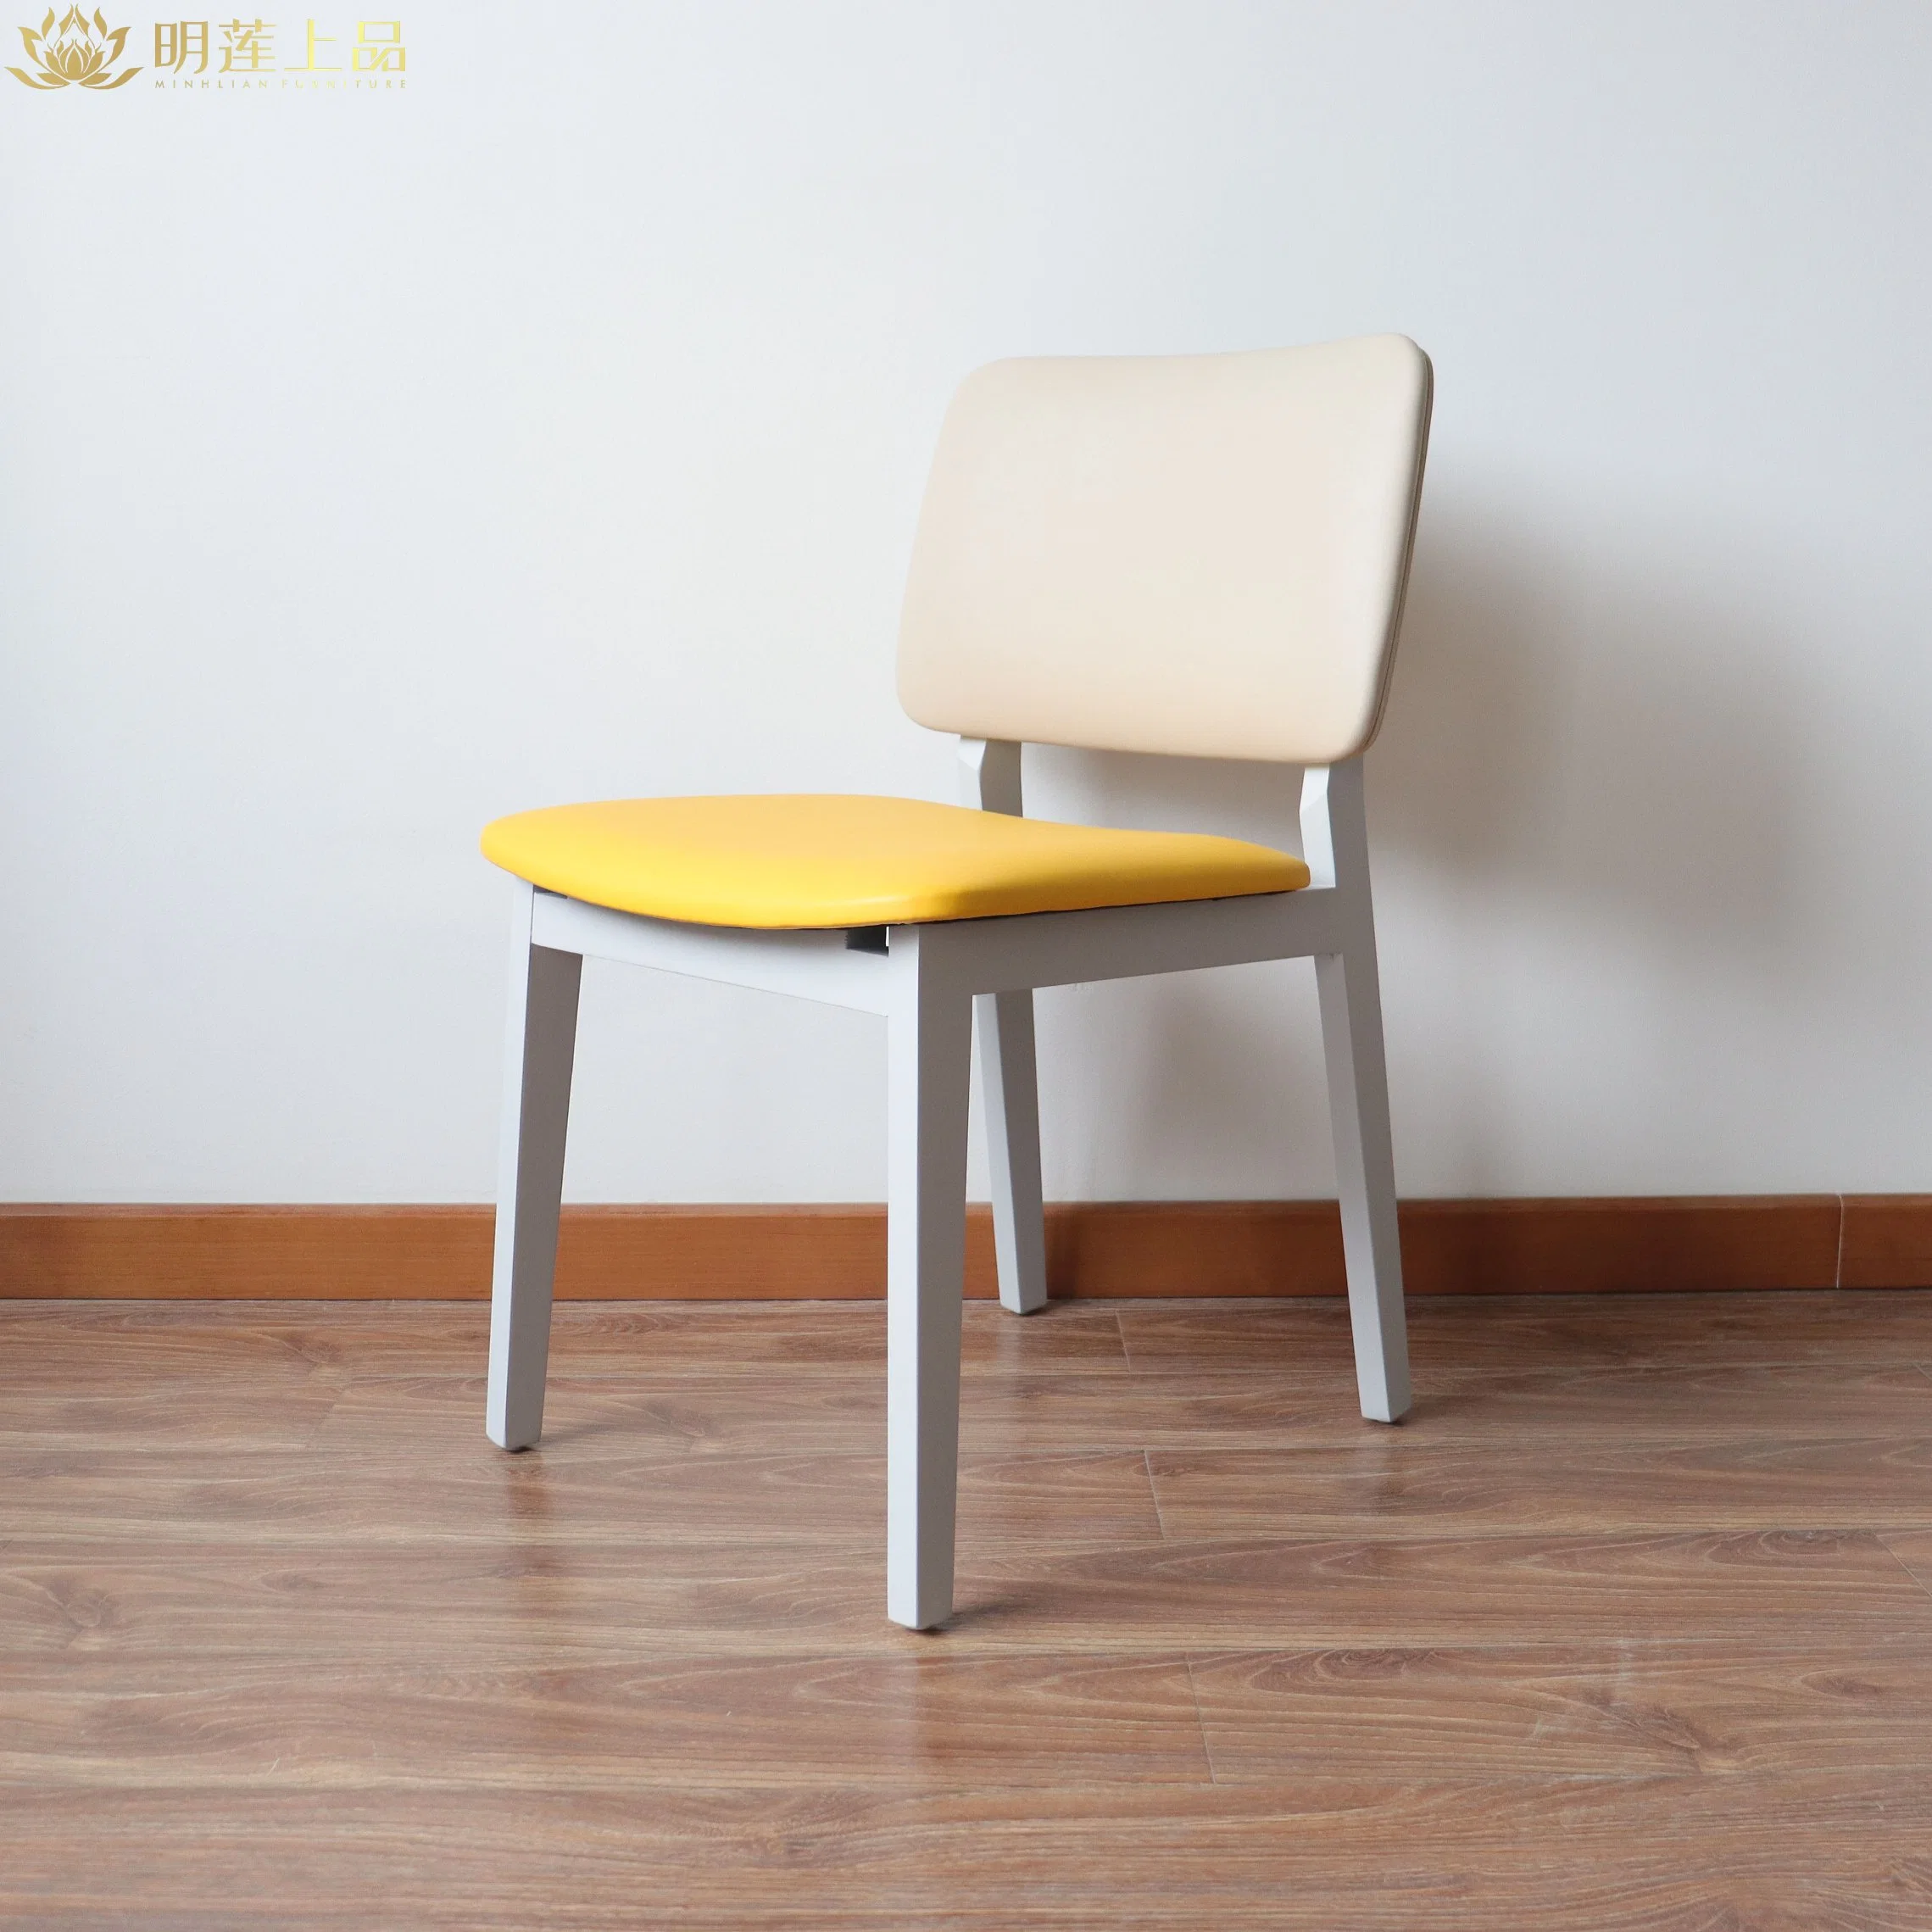 Chaise de restaurant en bois massif au design moderne, en cuir de pu jaune et rembourré Meubles de salle à manger Meubles de restaurant Meubles de maison café chaise en bois